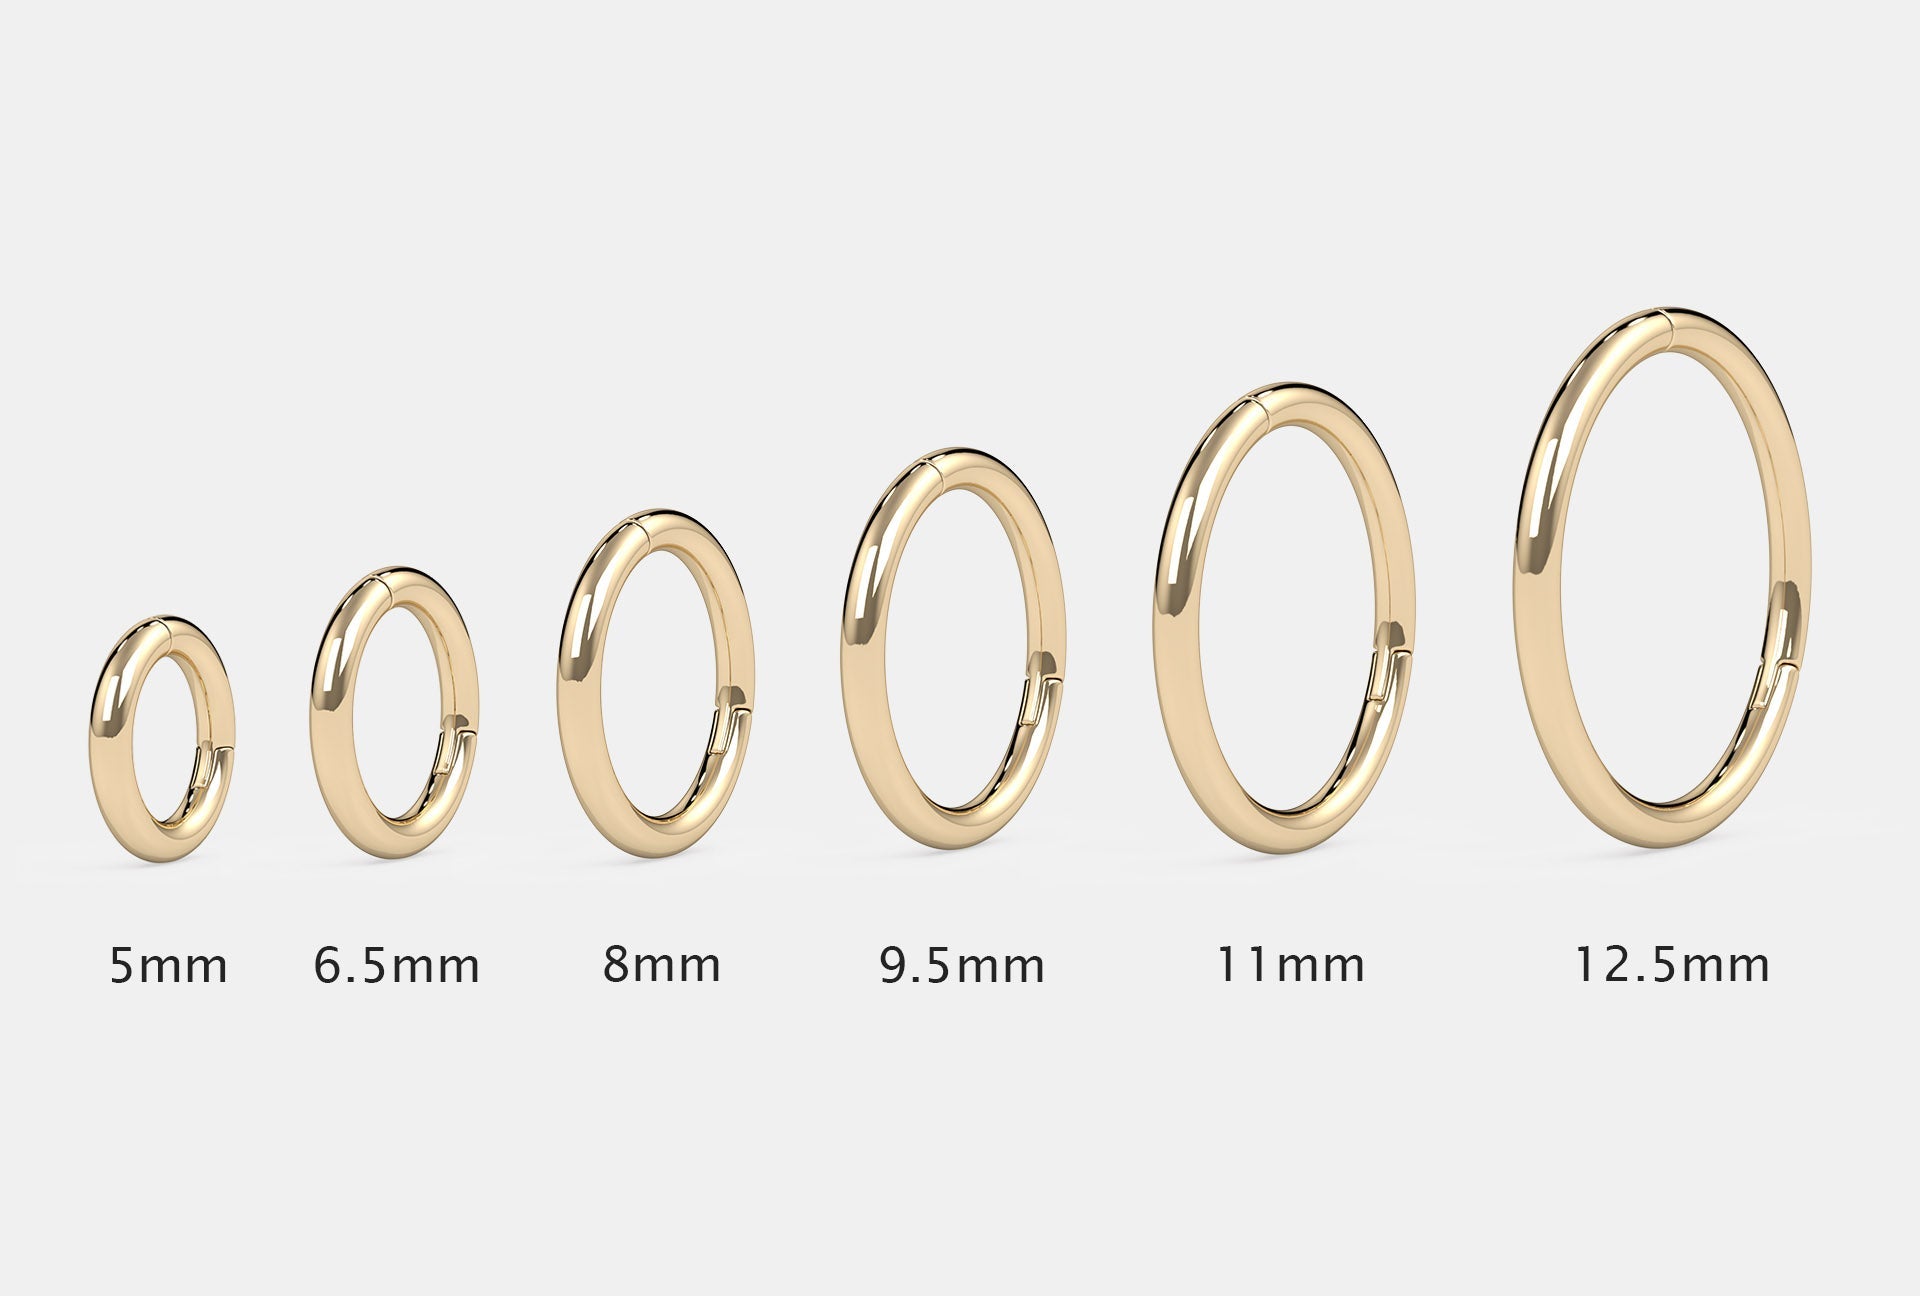 Buy 14K 18K 24K Solid Rose Gold Platinum Nose Ring Online in India - Etsy